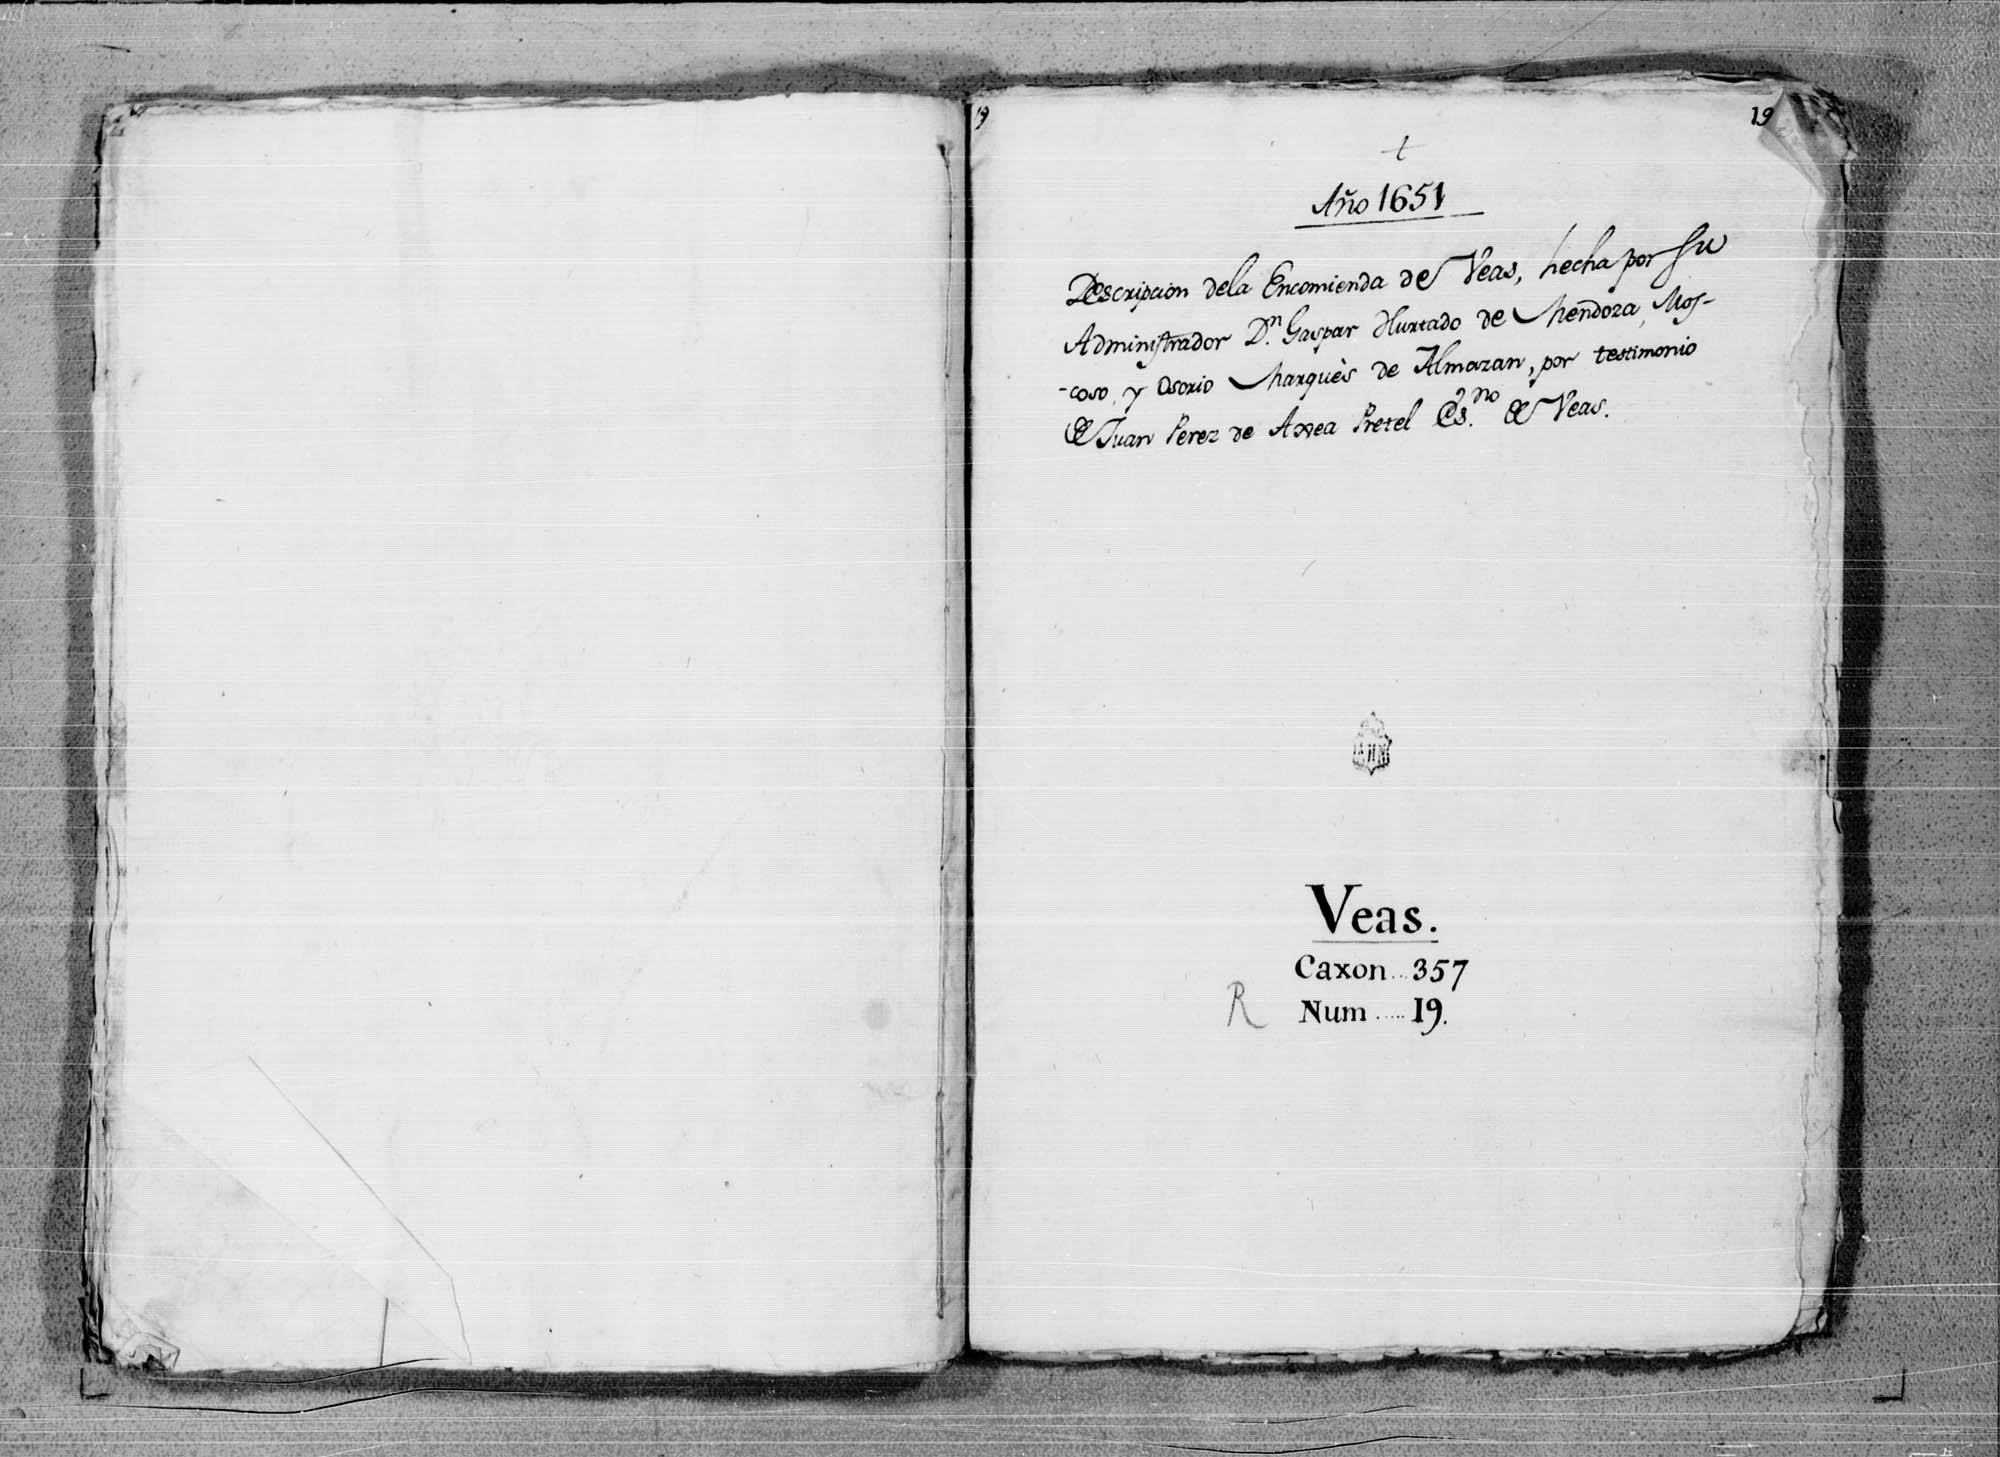 Descripción de la encomienda de Beas de Segura, realizada por orden de su comendador Gaspar Hurtado de Mendoza, marqués de Almazán.